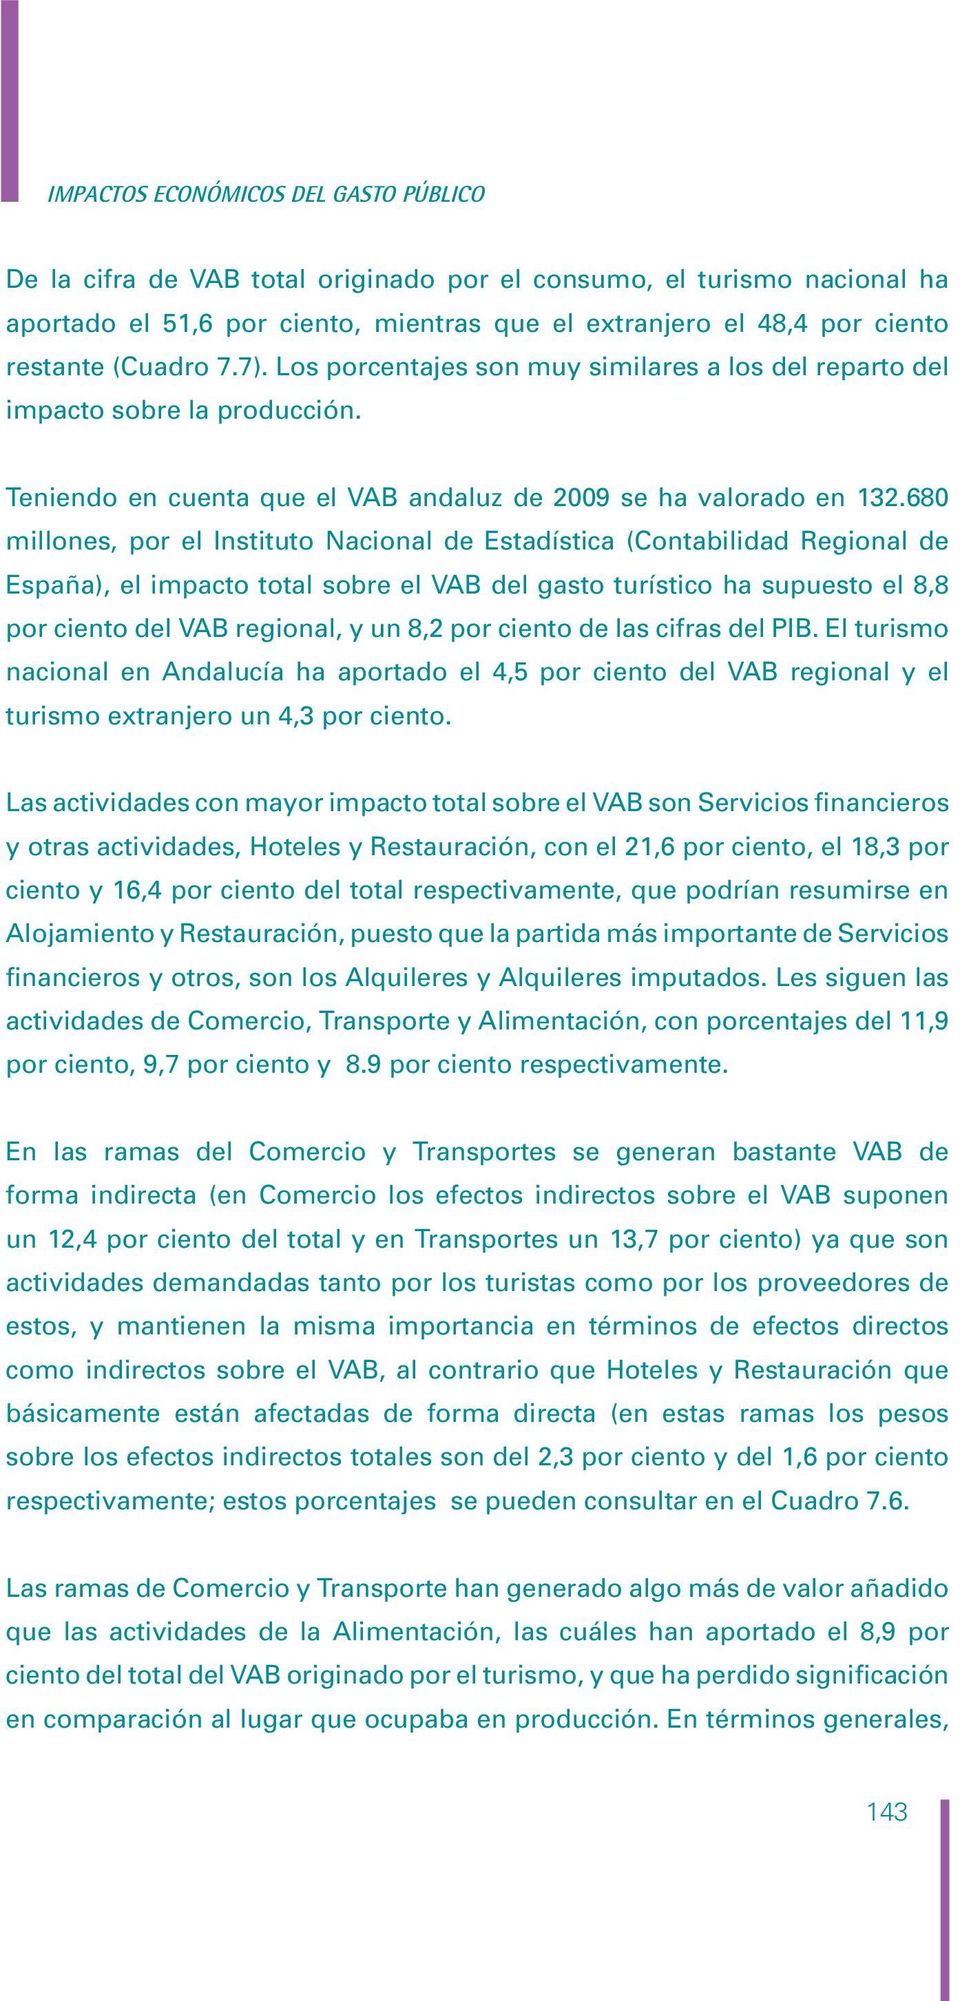 680 millones, por el Instituto Nacional de Estadística (Contabilidad Regional de España), el impacto total sobre el VAB del gasto turístico ha supuesto el 8,8 por ciento del VAB regional, y un 8,2